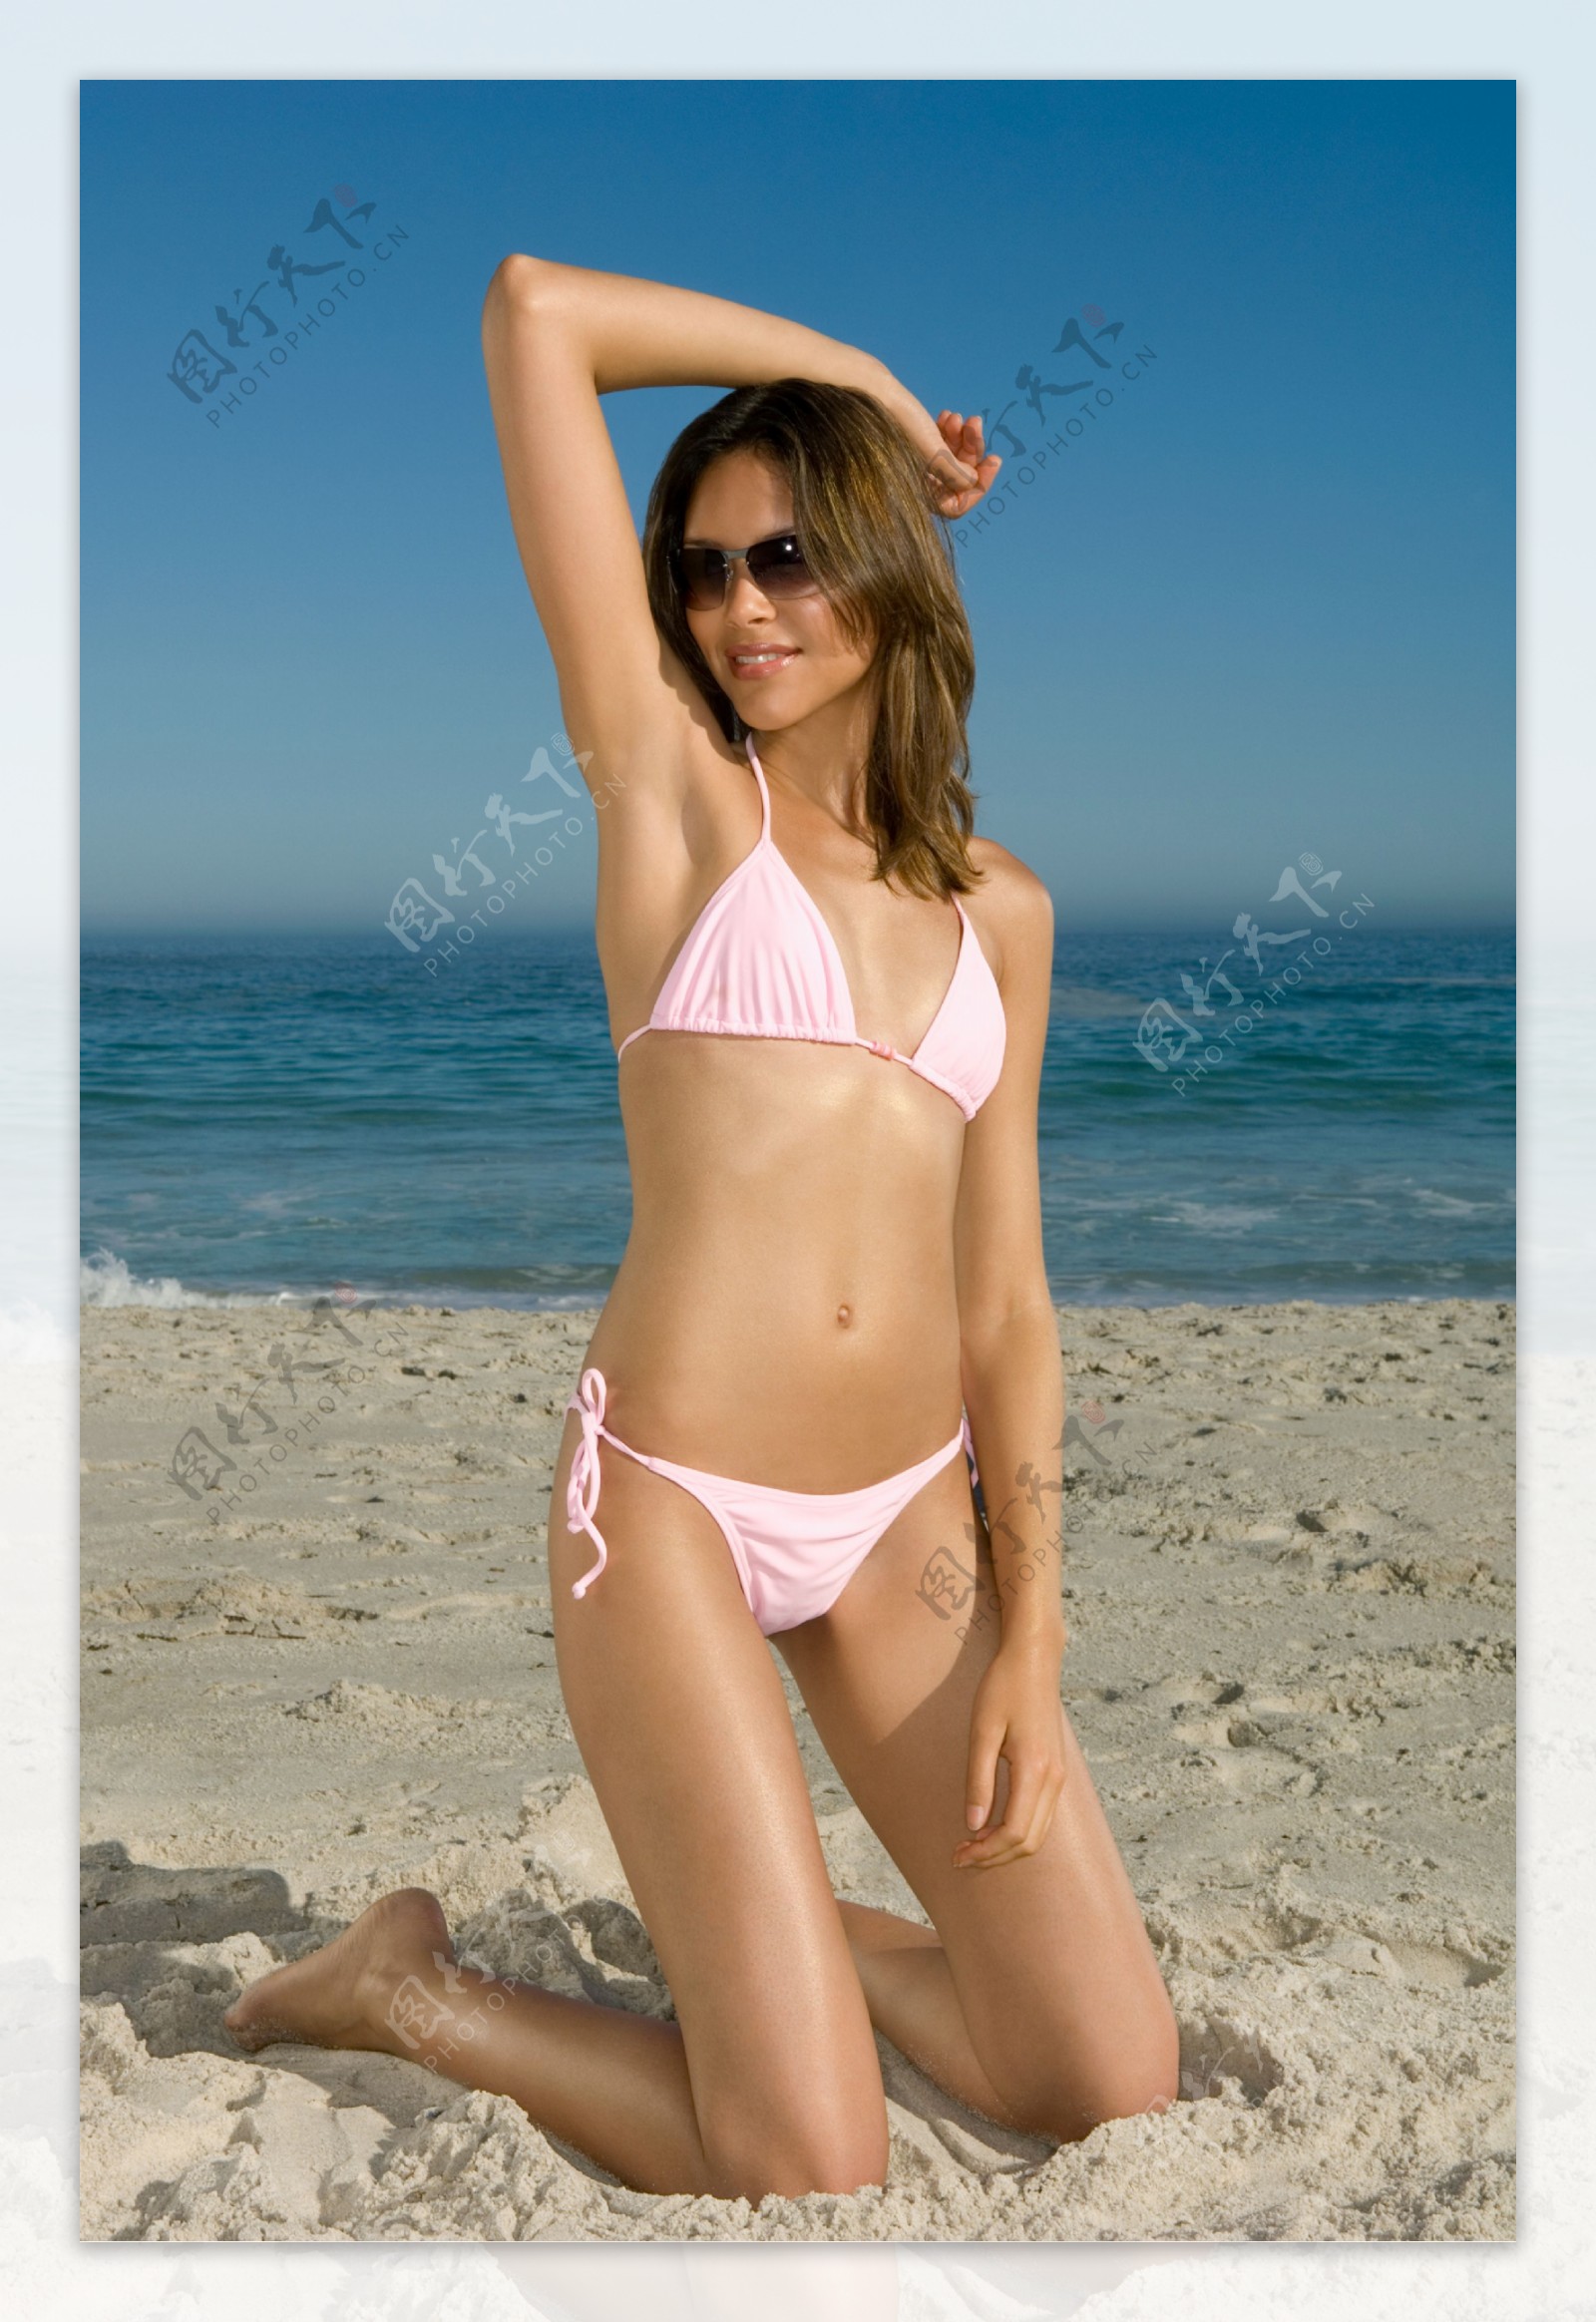 跪在沙滩上的美女图片